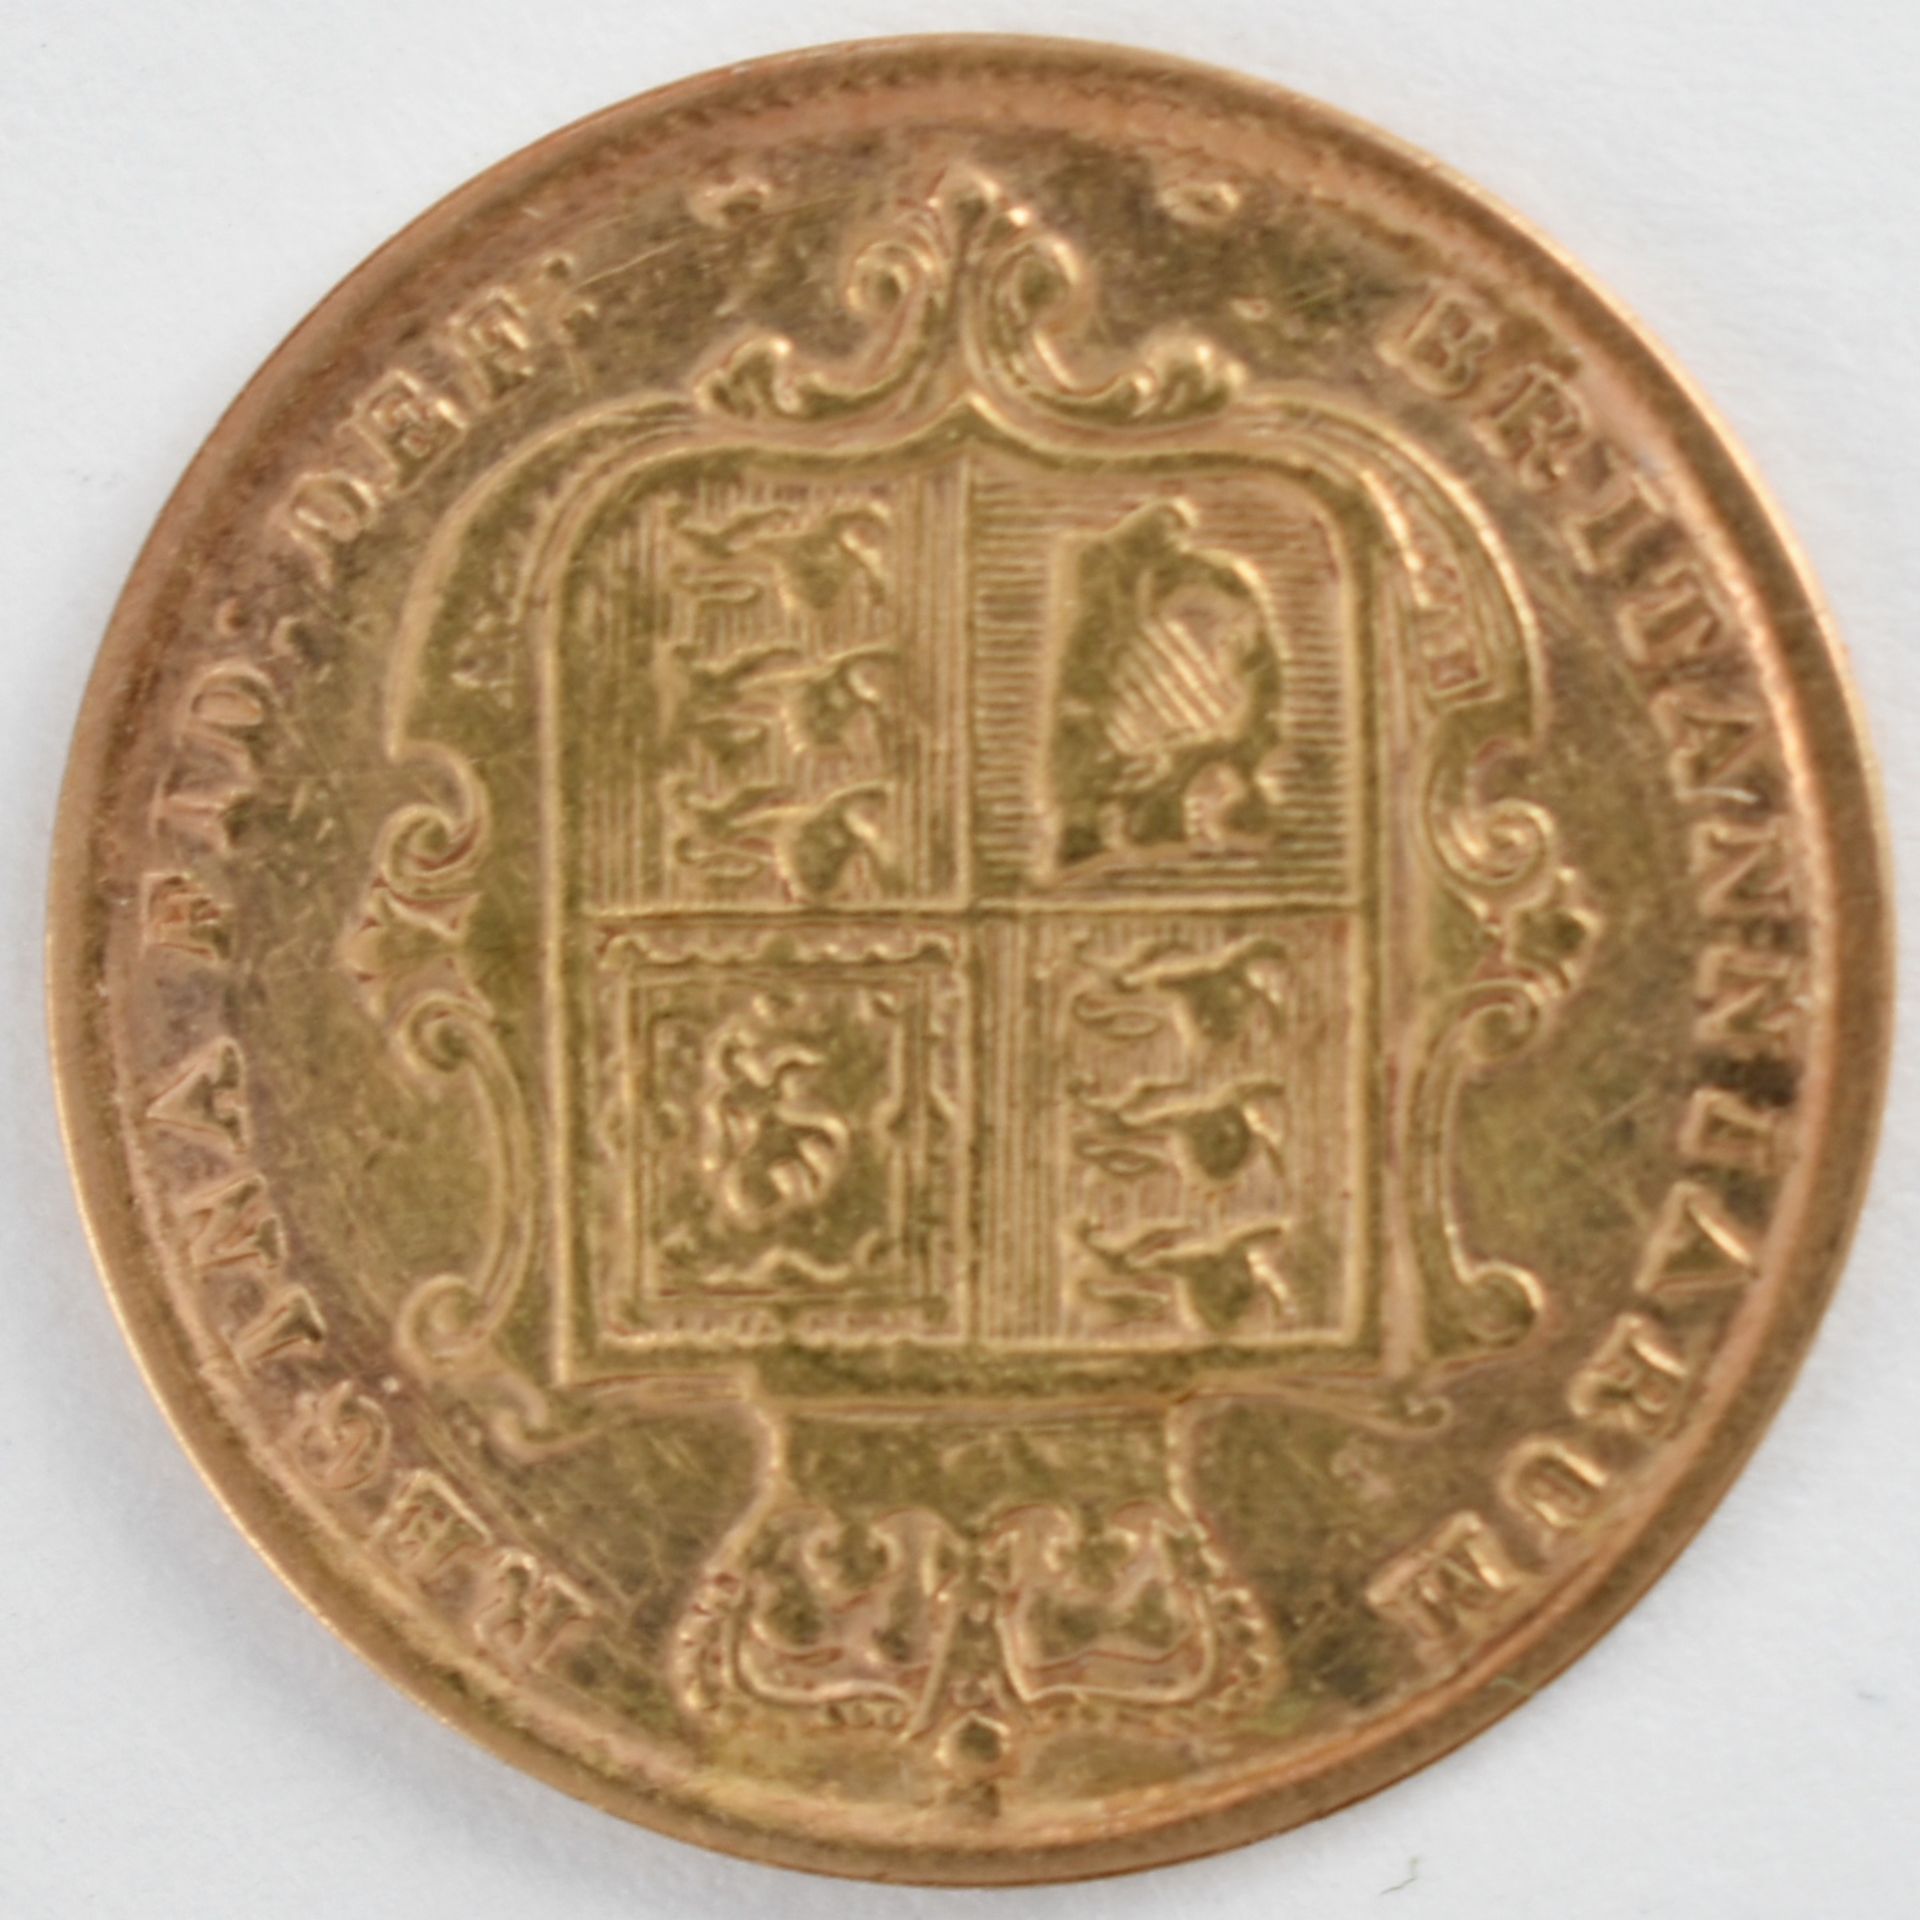 Goldmünze Großbritannien 1883 1/2 Sovereign - 1/2 Pfund in Gold, 3,994 g, 916/1000, D ca. 19,3 mm, - Bild 3 aus 3